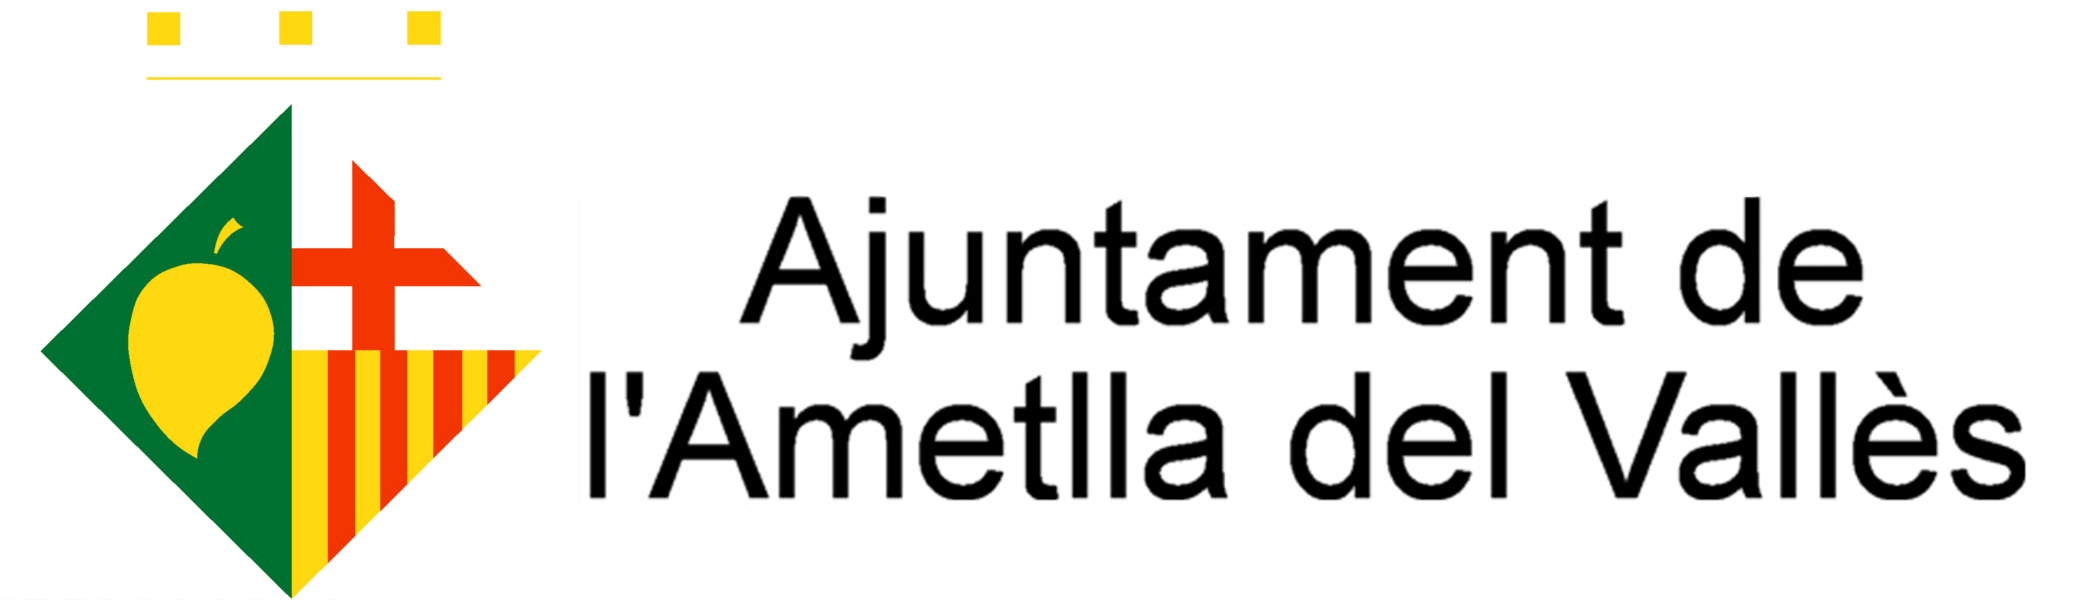 Ajuntament L'Ametlla del Vallès